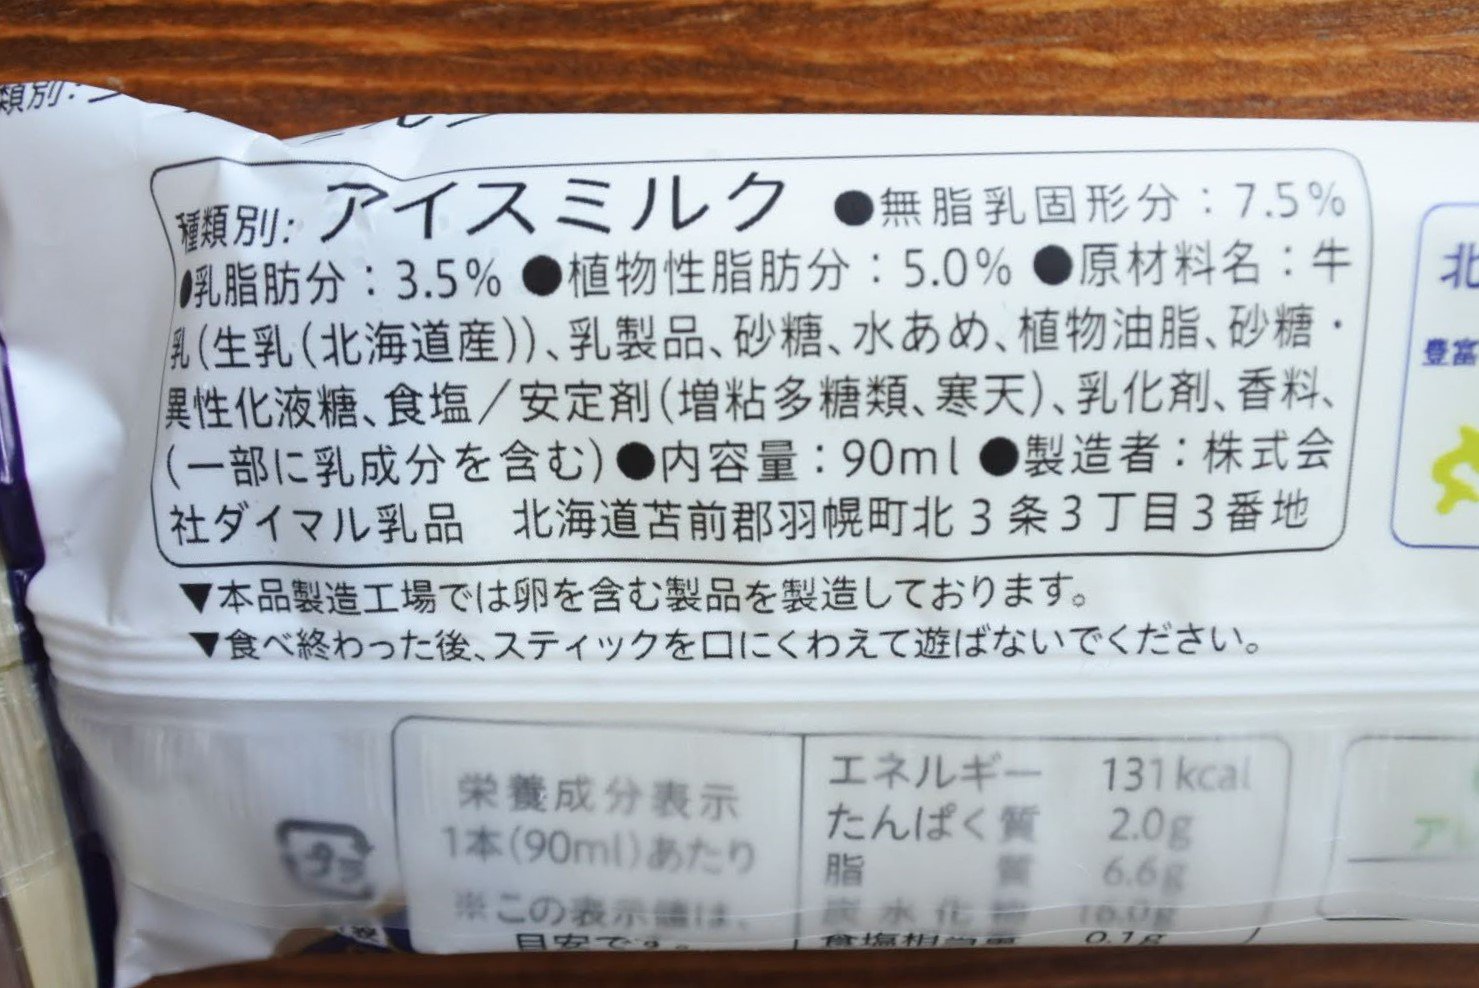 セコマ北海道牛乳アイス表示